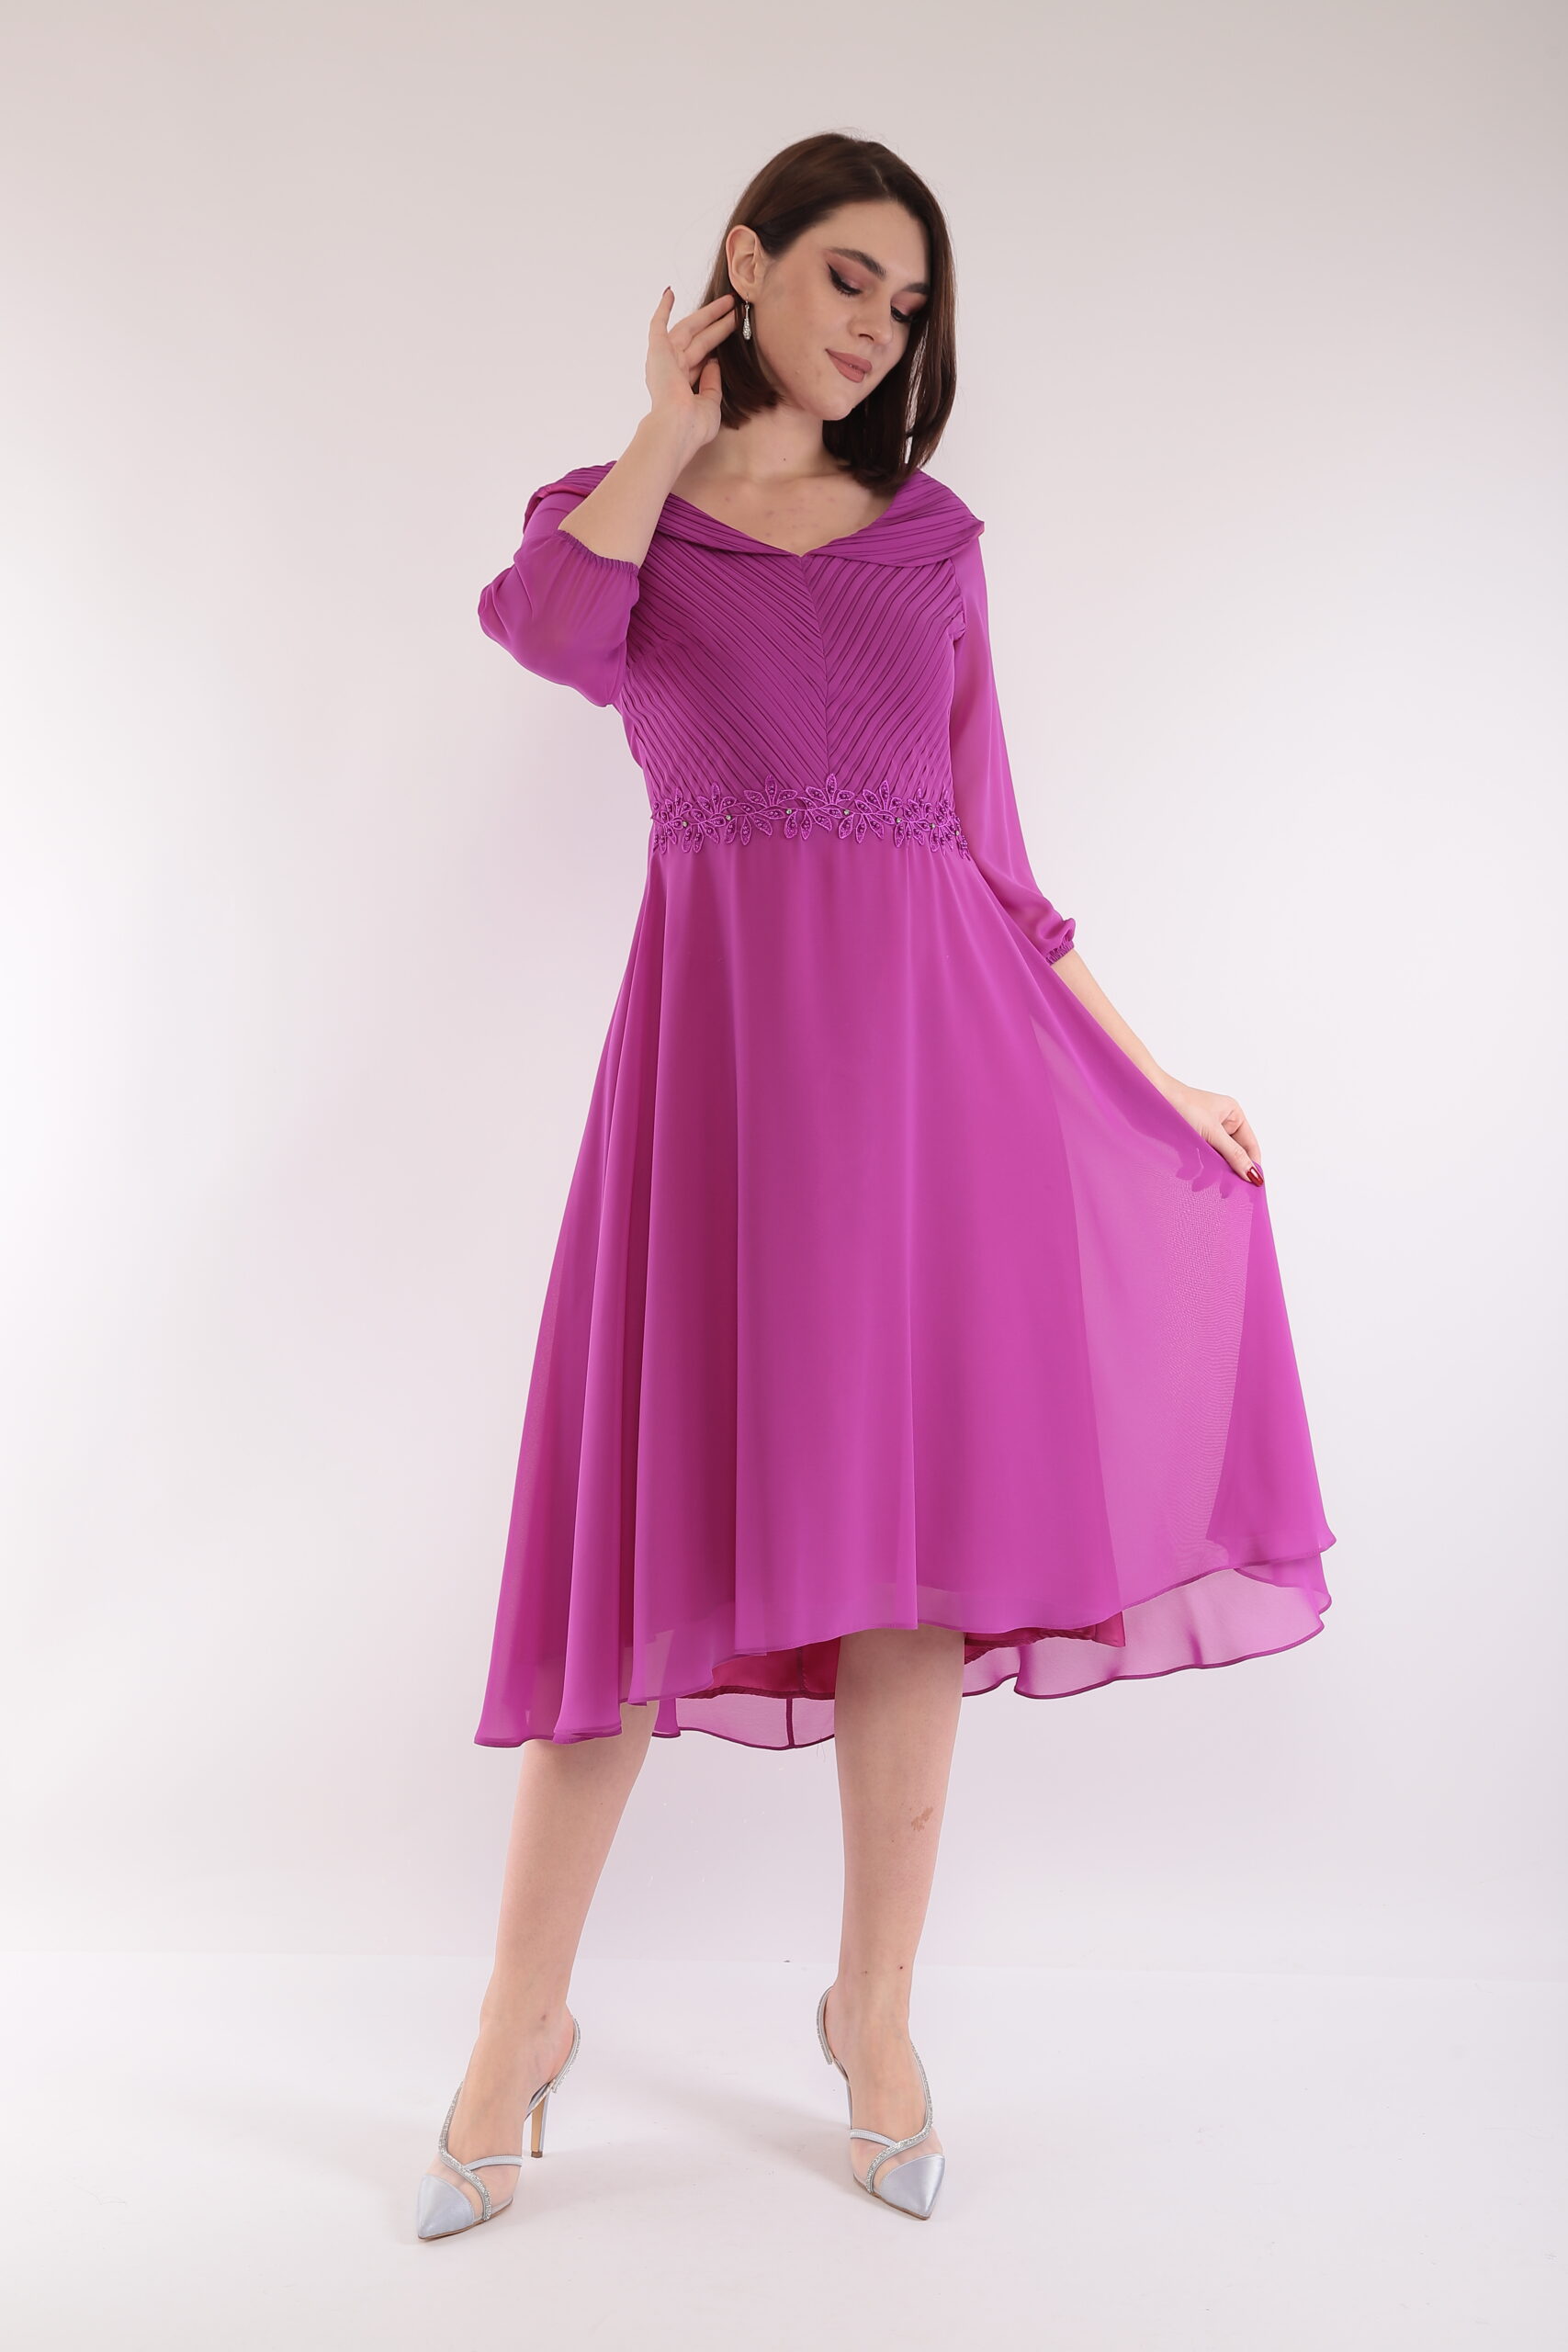 Lizabella 2661 Dress - Manor Fashions